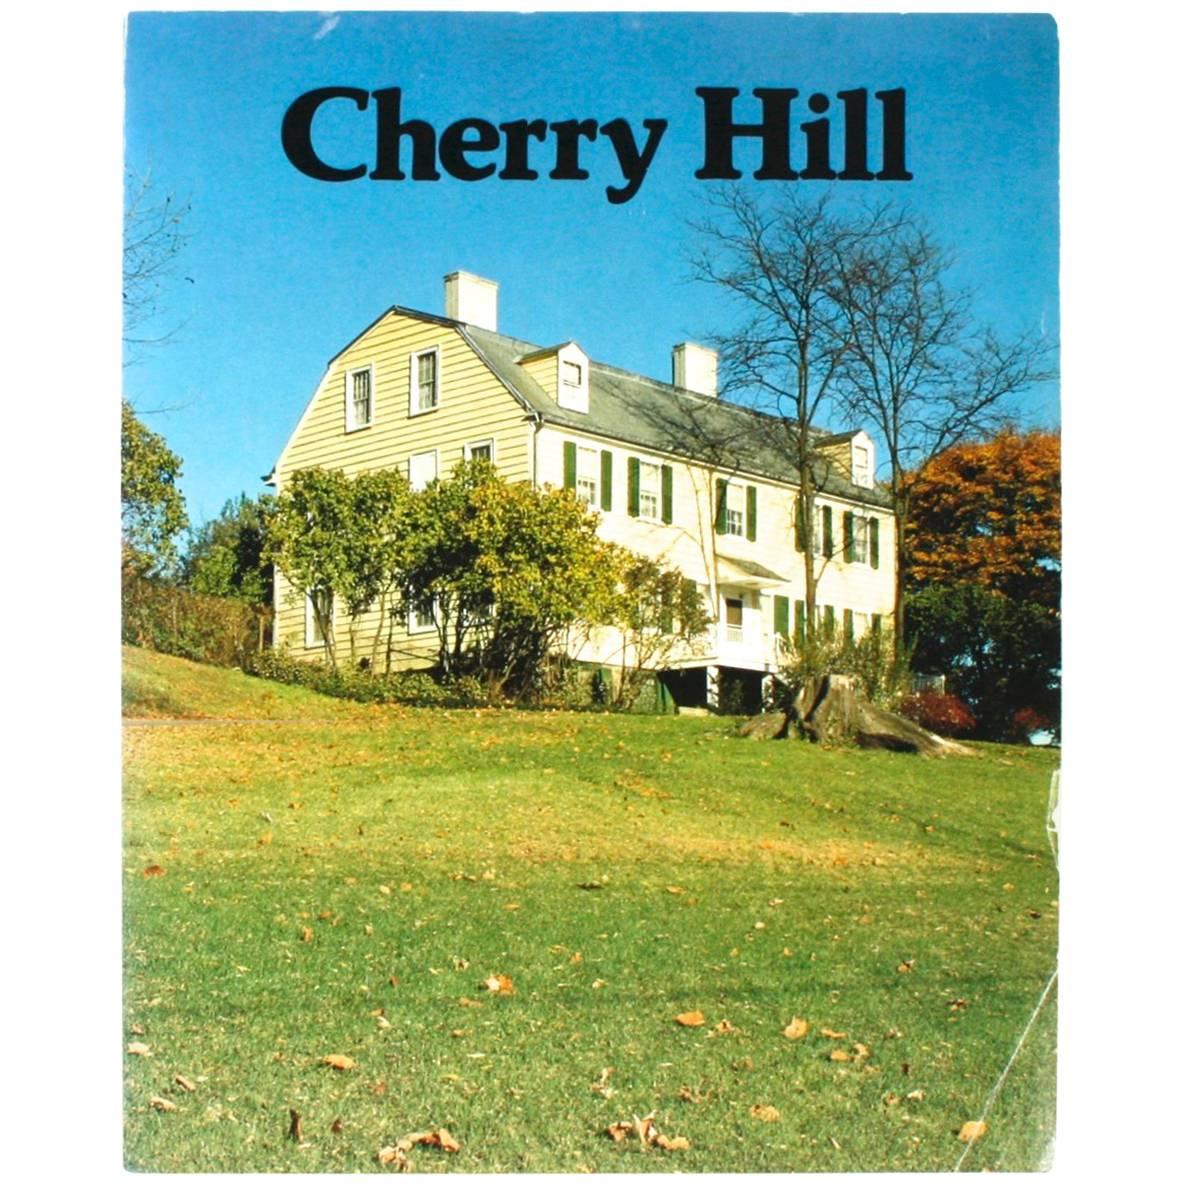 ""Cherry Hill"" von Roderic H. Blackburn